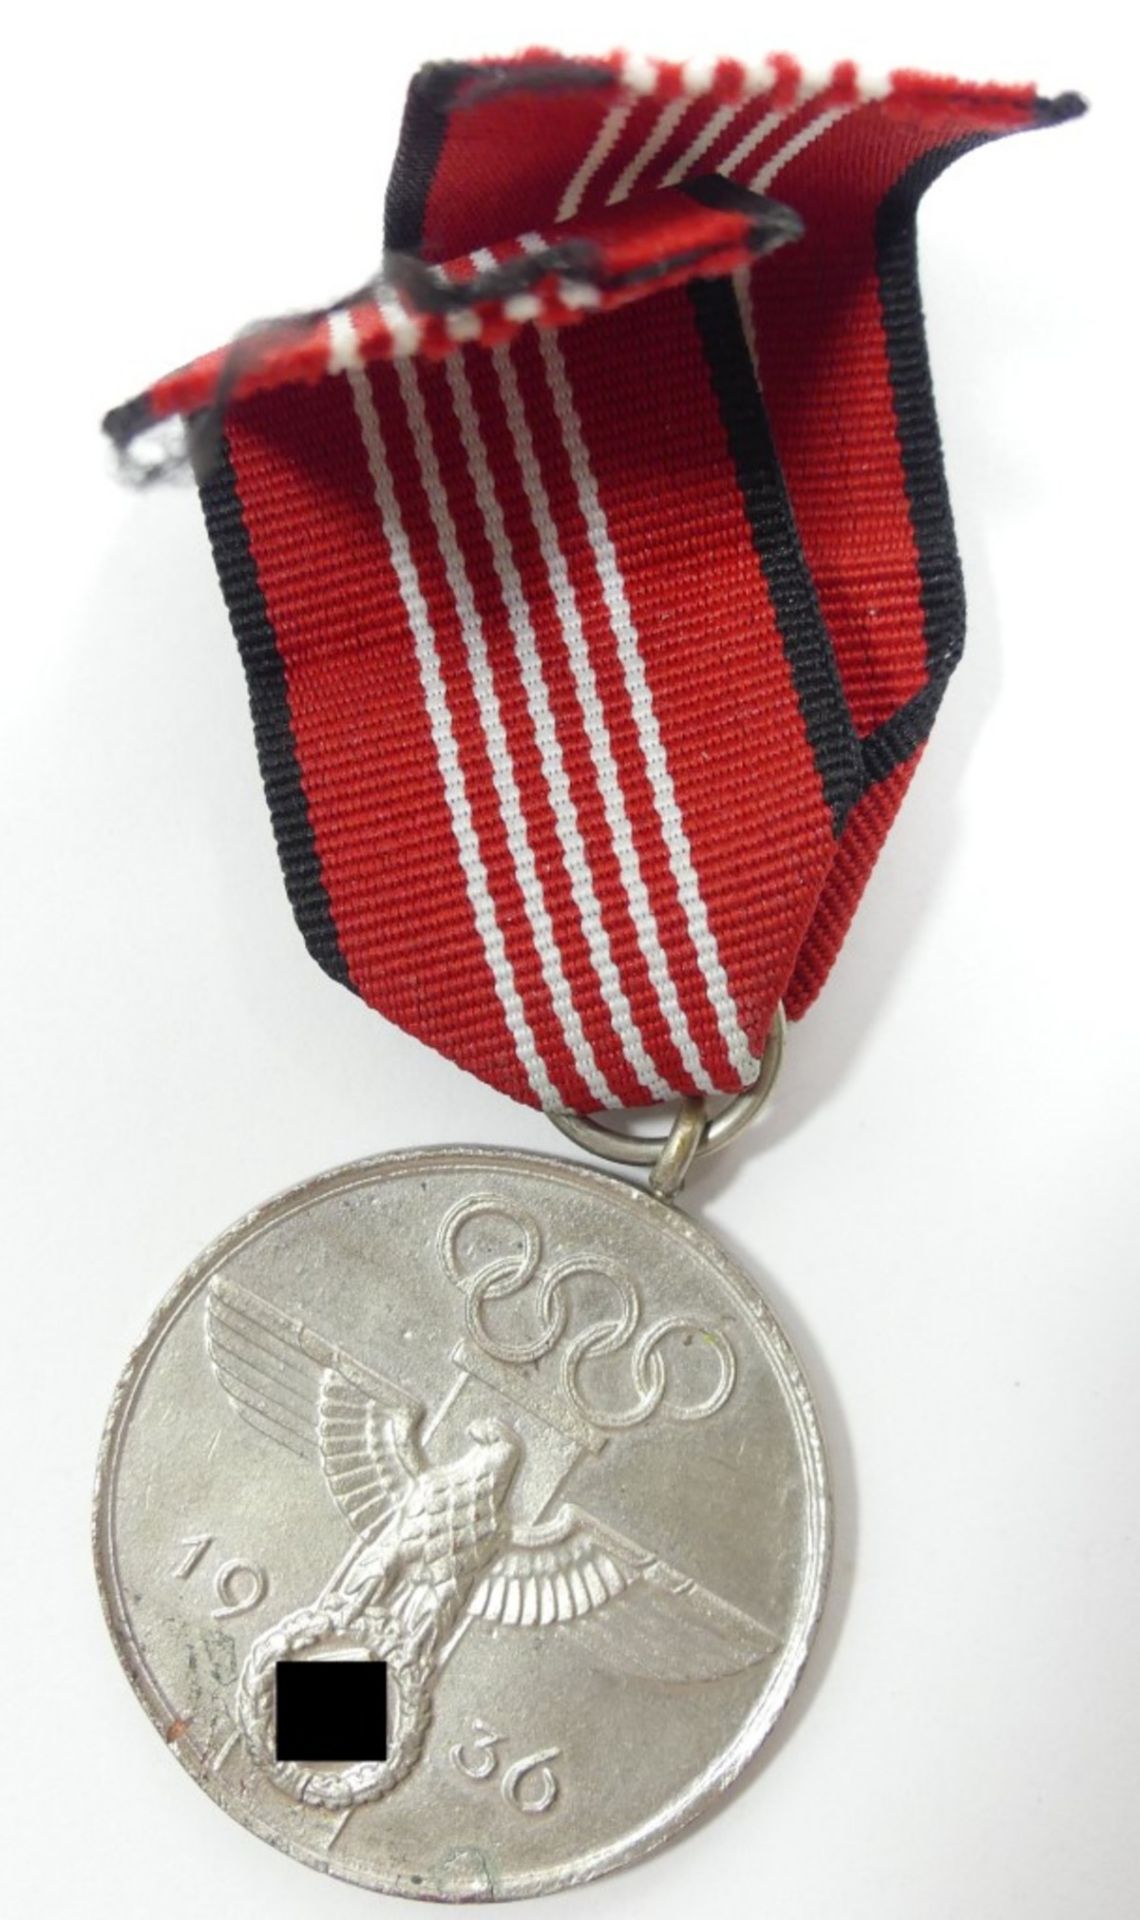 Medaille "Für verdienstvolle Mitarbeit bei den Olympischen Spielen 1936", versilbert - Bild 3 aus 4